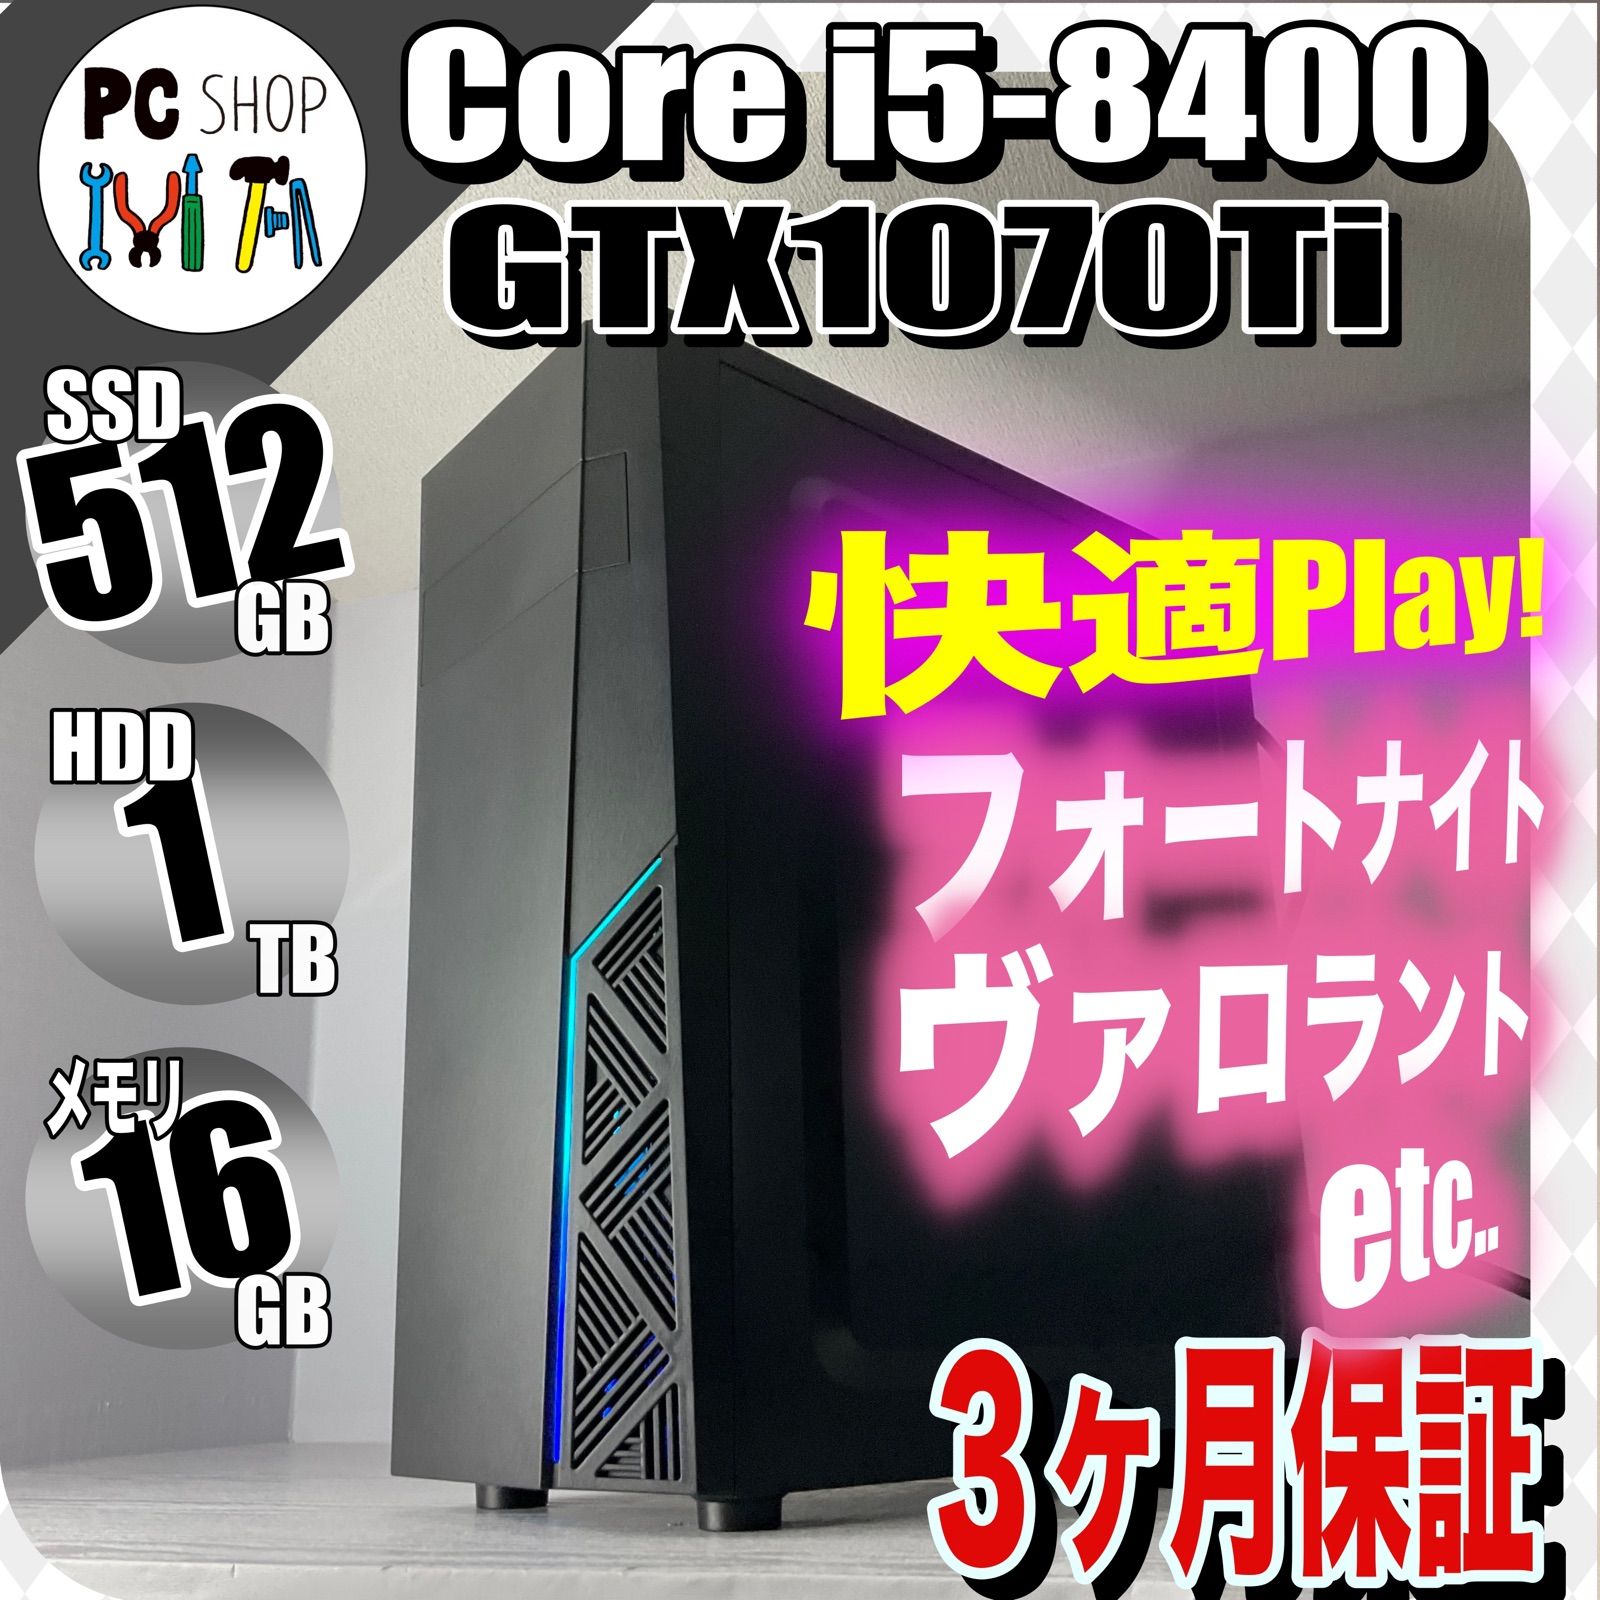 MA-010093］GTX1070Ti ゲーミングＰＣ Core i5-8400 SSD 512GB 初心者